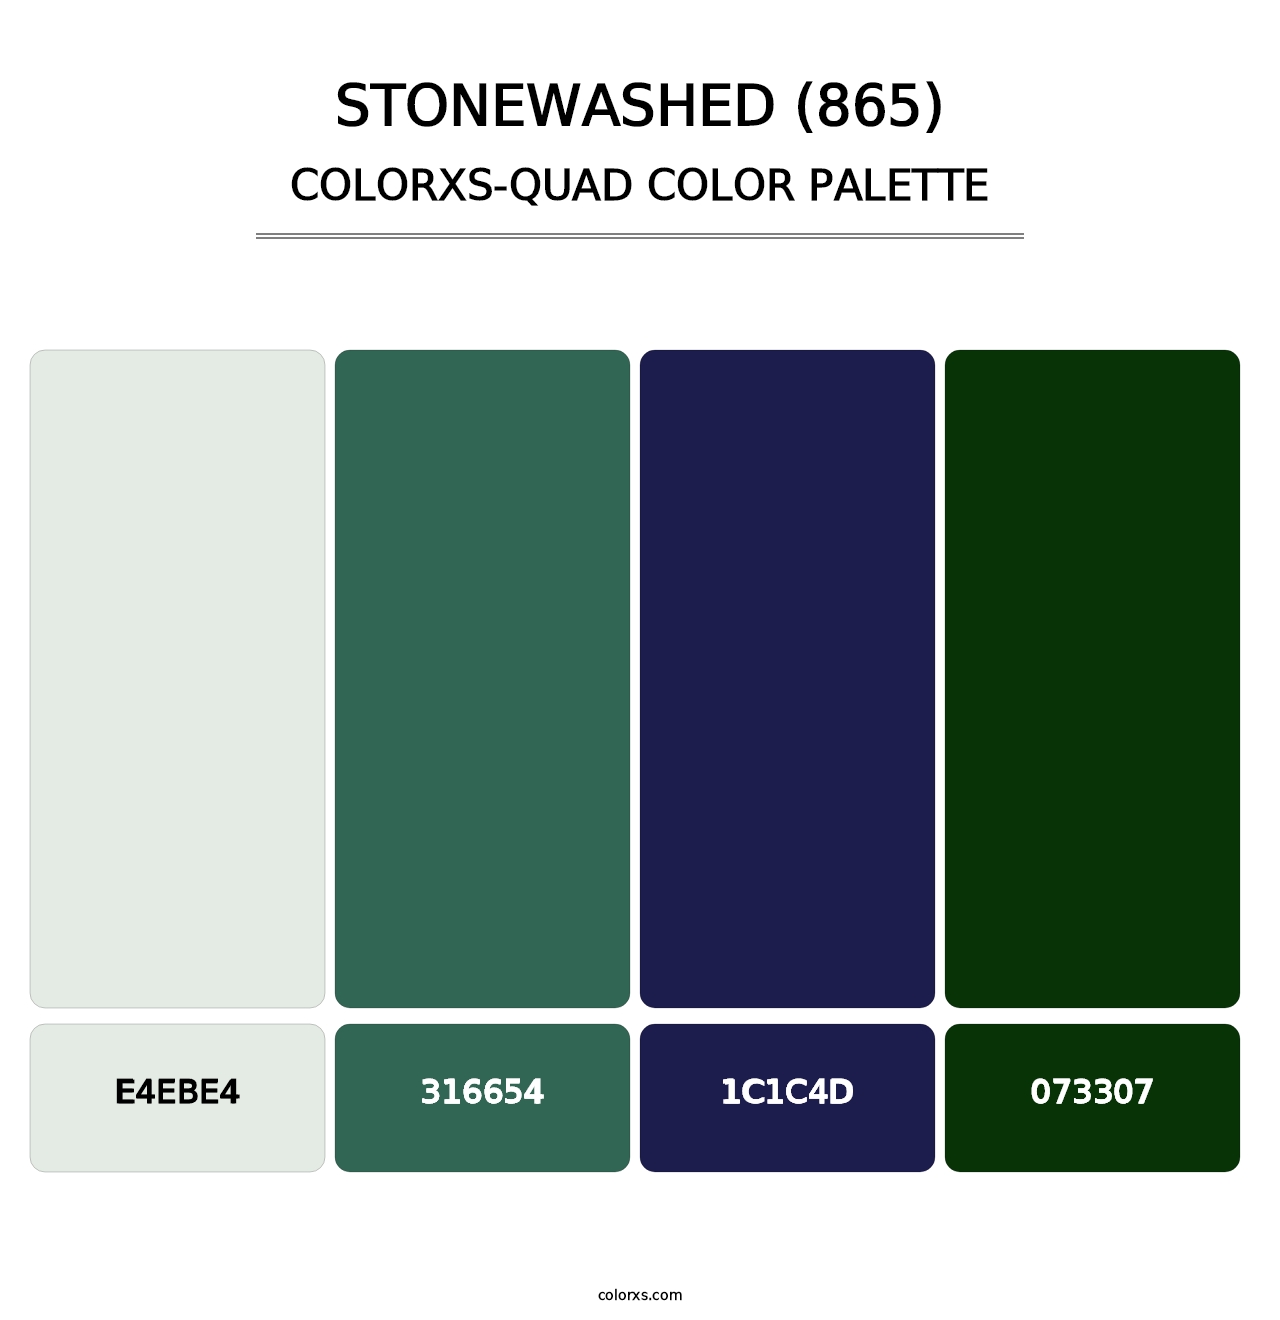 Stonewashed (865) - Colorxs Quad Palette